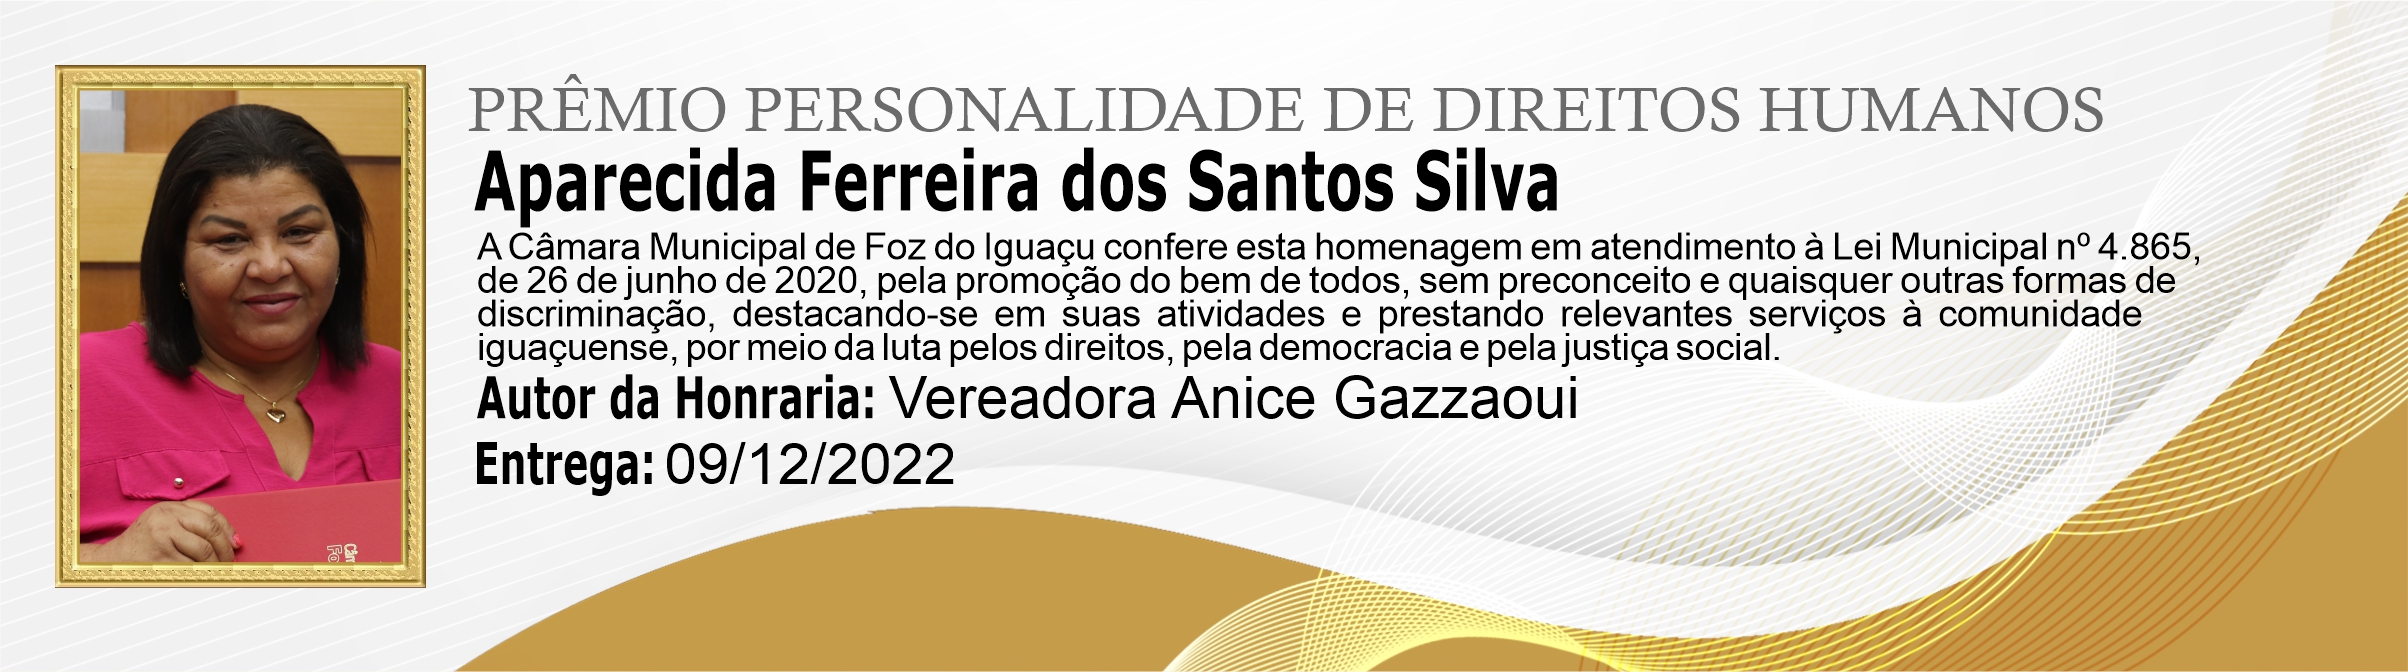 Aparecida Ferreira dos Santos Silva